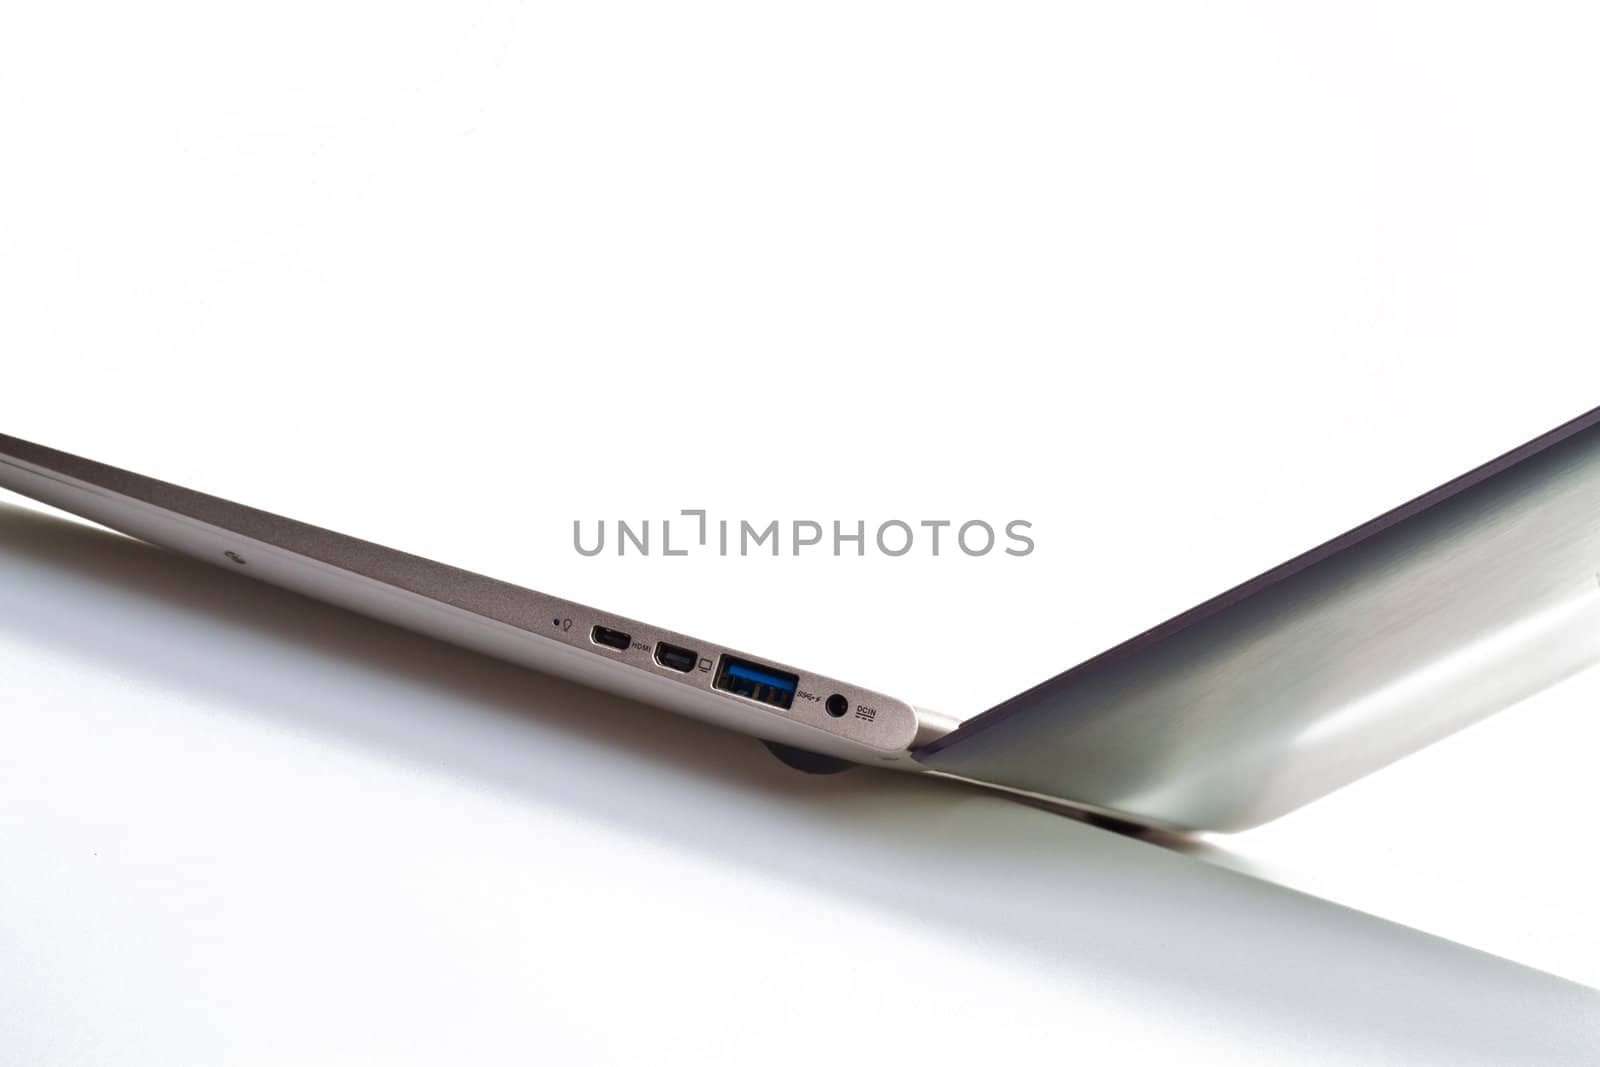 Ultrathin Laptop by azamshah72